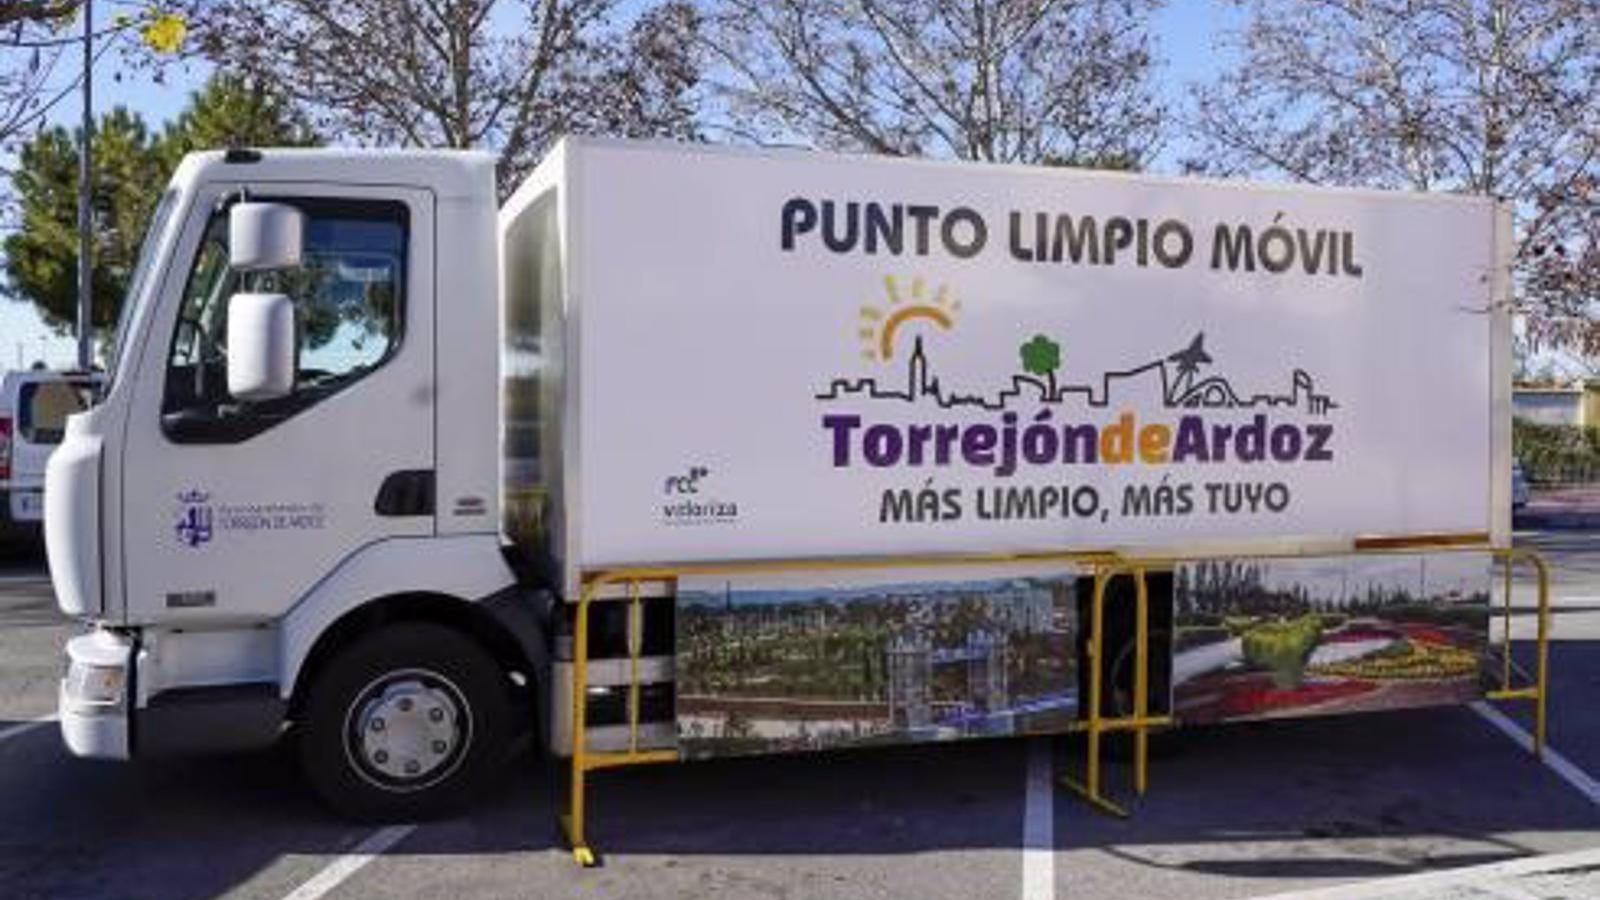 Diez puntos limpios de barrio facilitarán a los ciudadanos de Torrejón el reciclaje de residuos